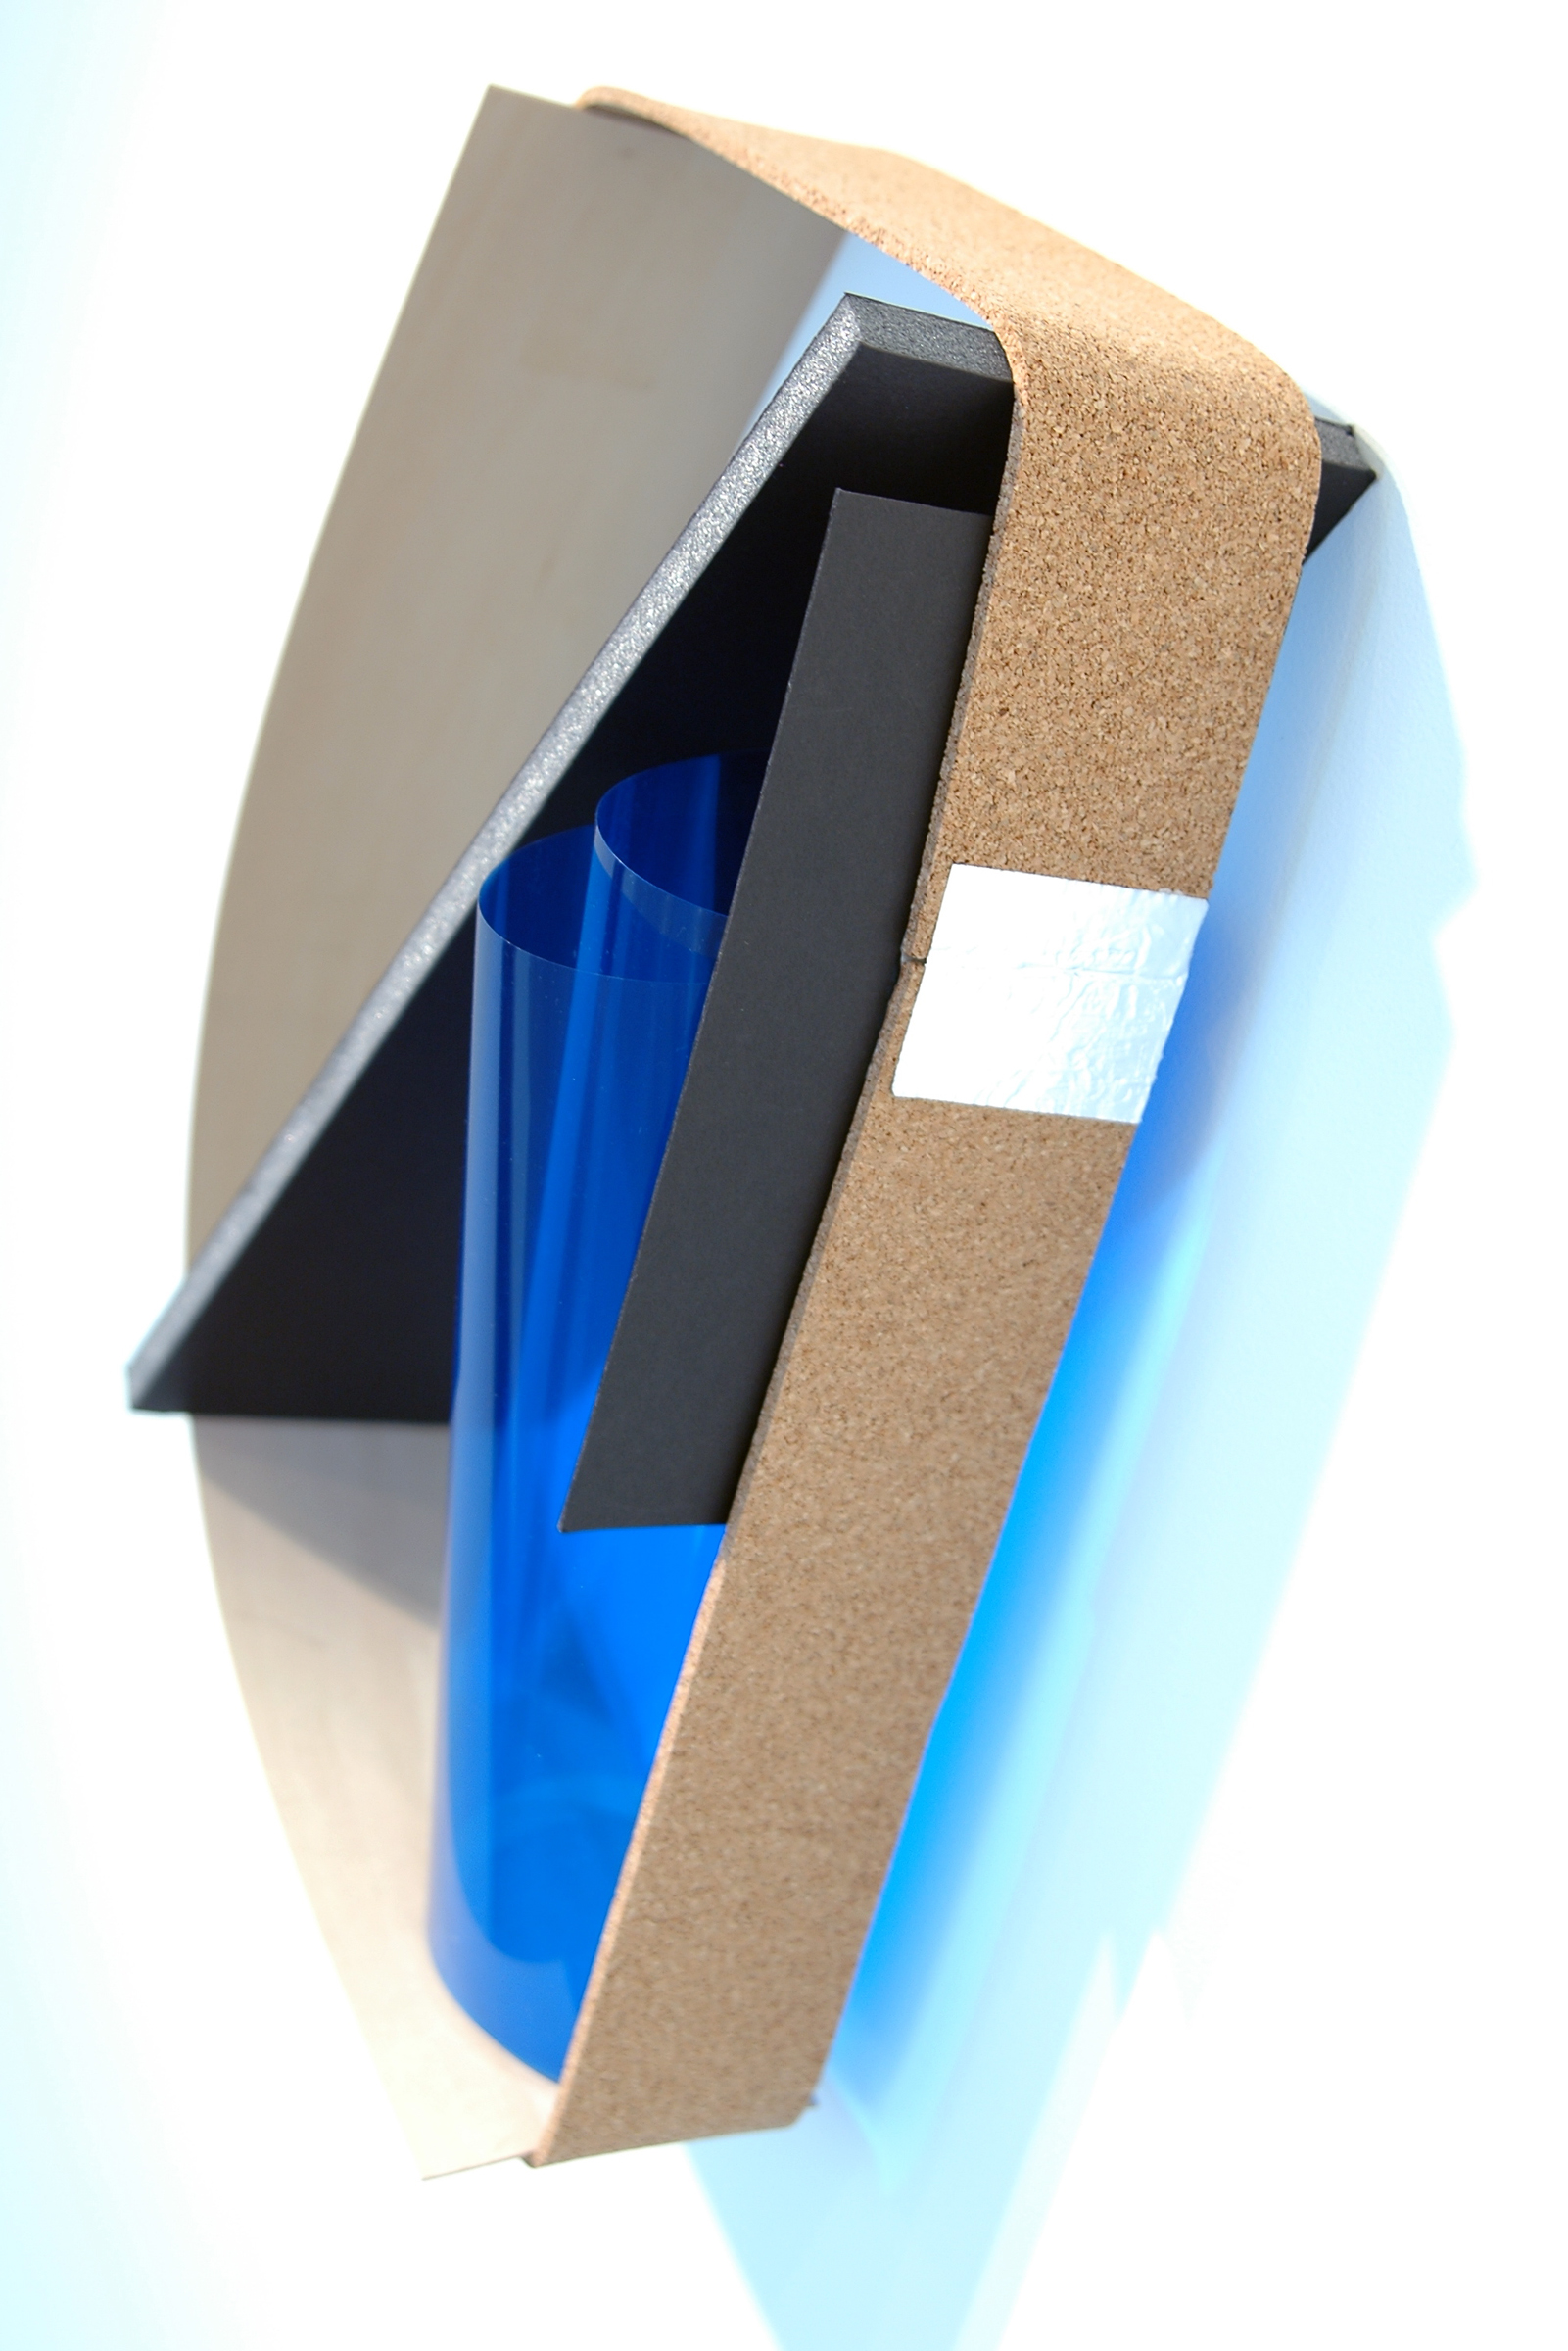   ALICE CATTANEO   Ripetuto , 2013, cork, foam board, blue acetate, balsa wood, aluminium tape, paper, 18.5" x 14" x 5.5" 